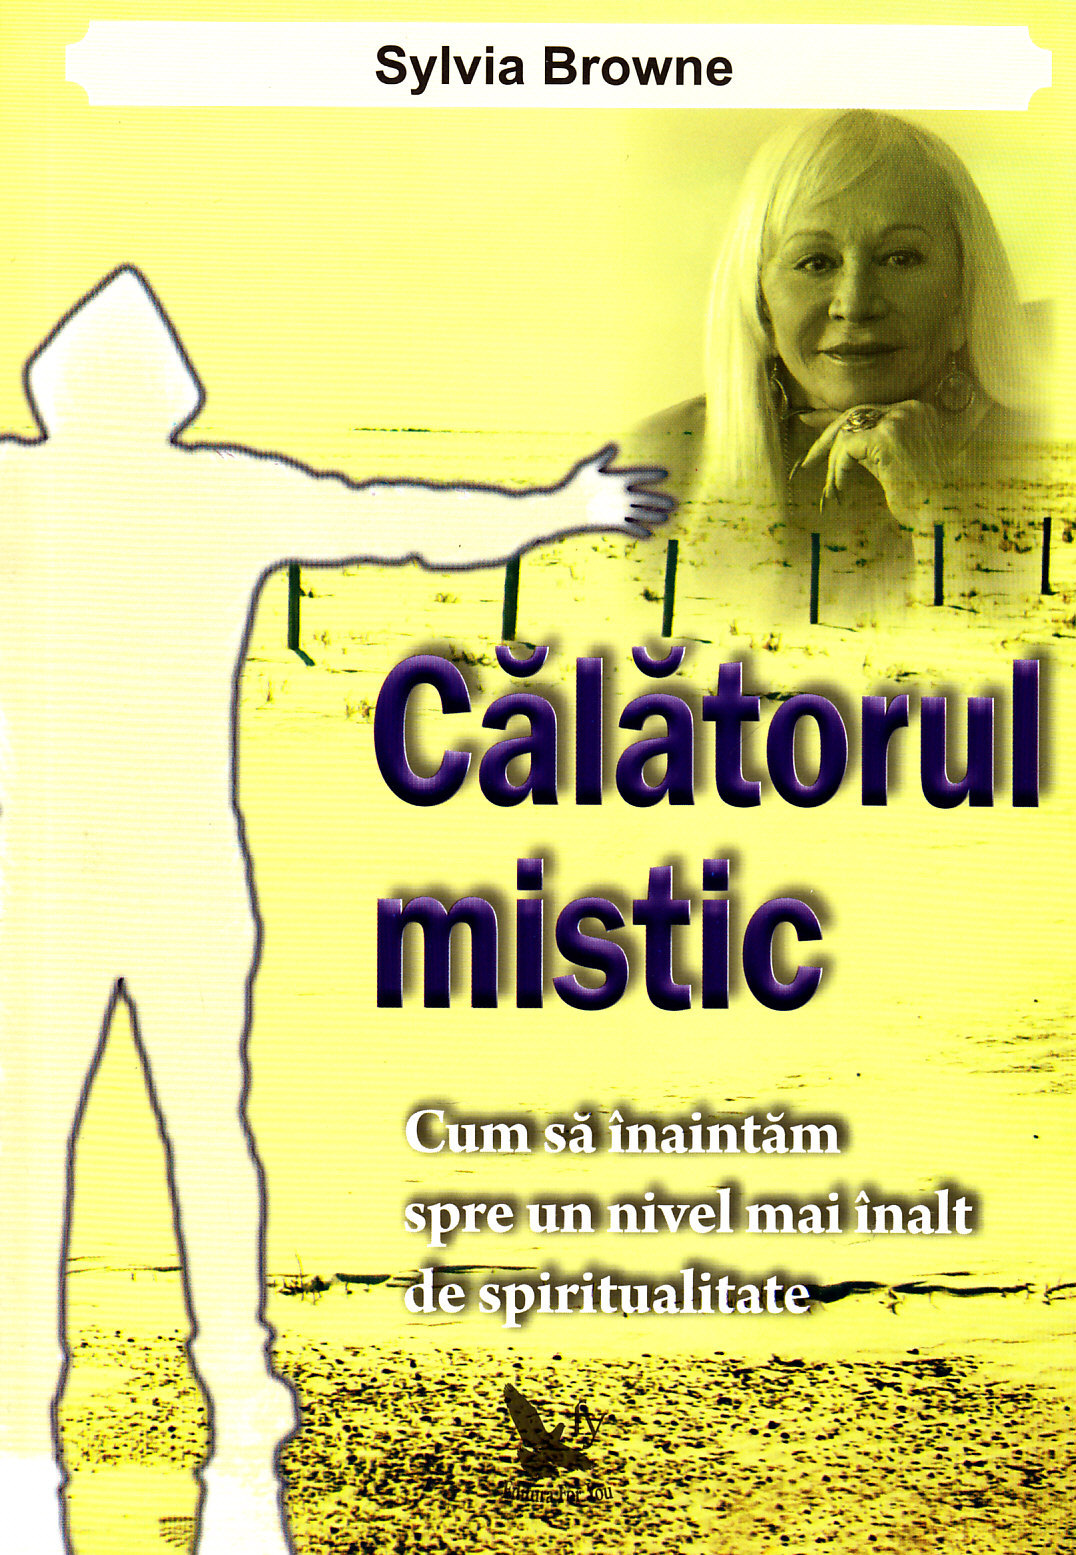 Calatorul mistic - Sylvia Browne